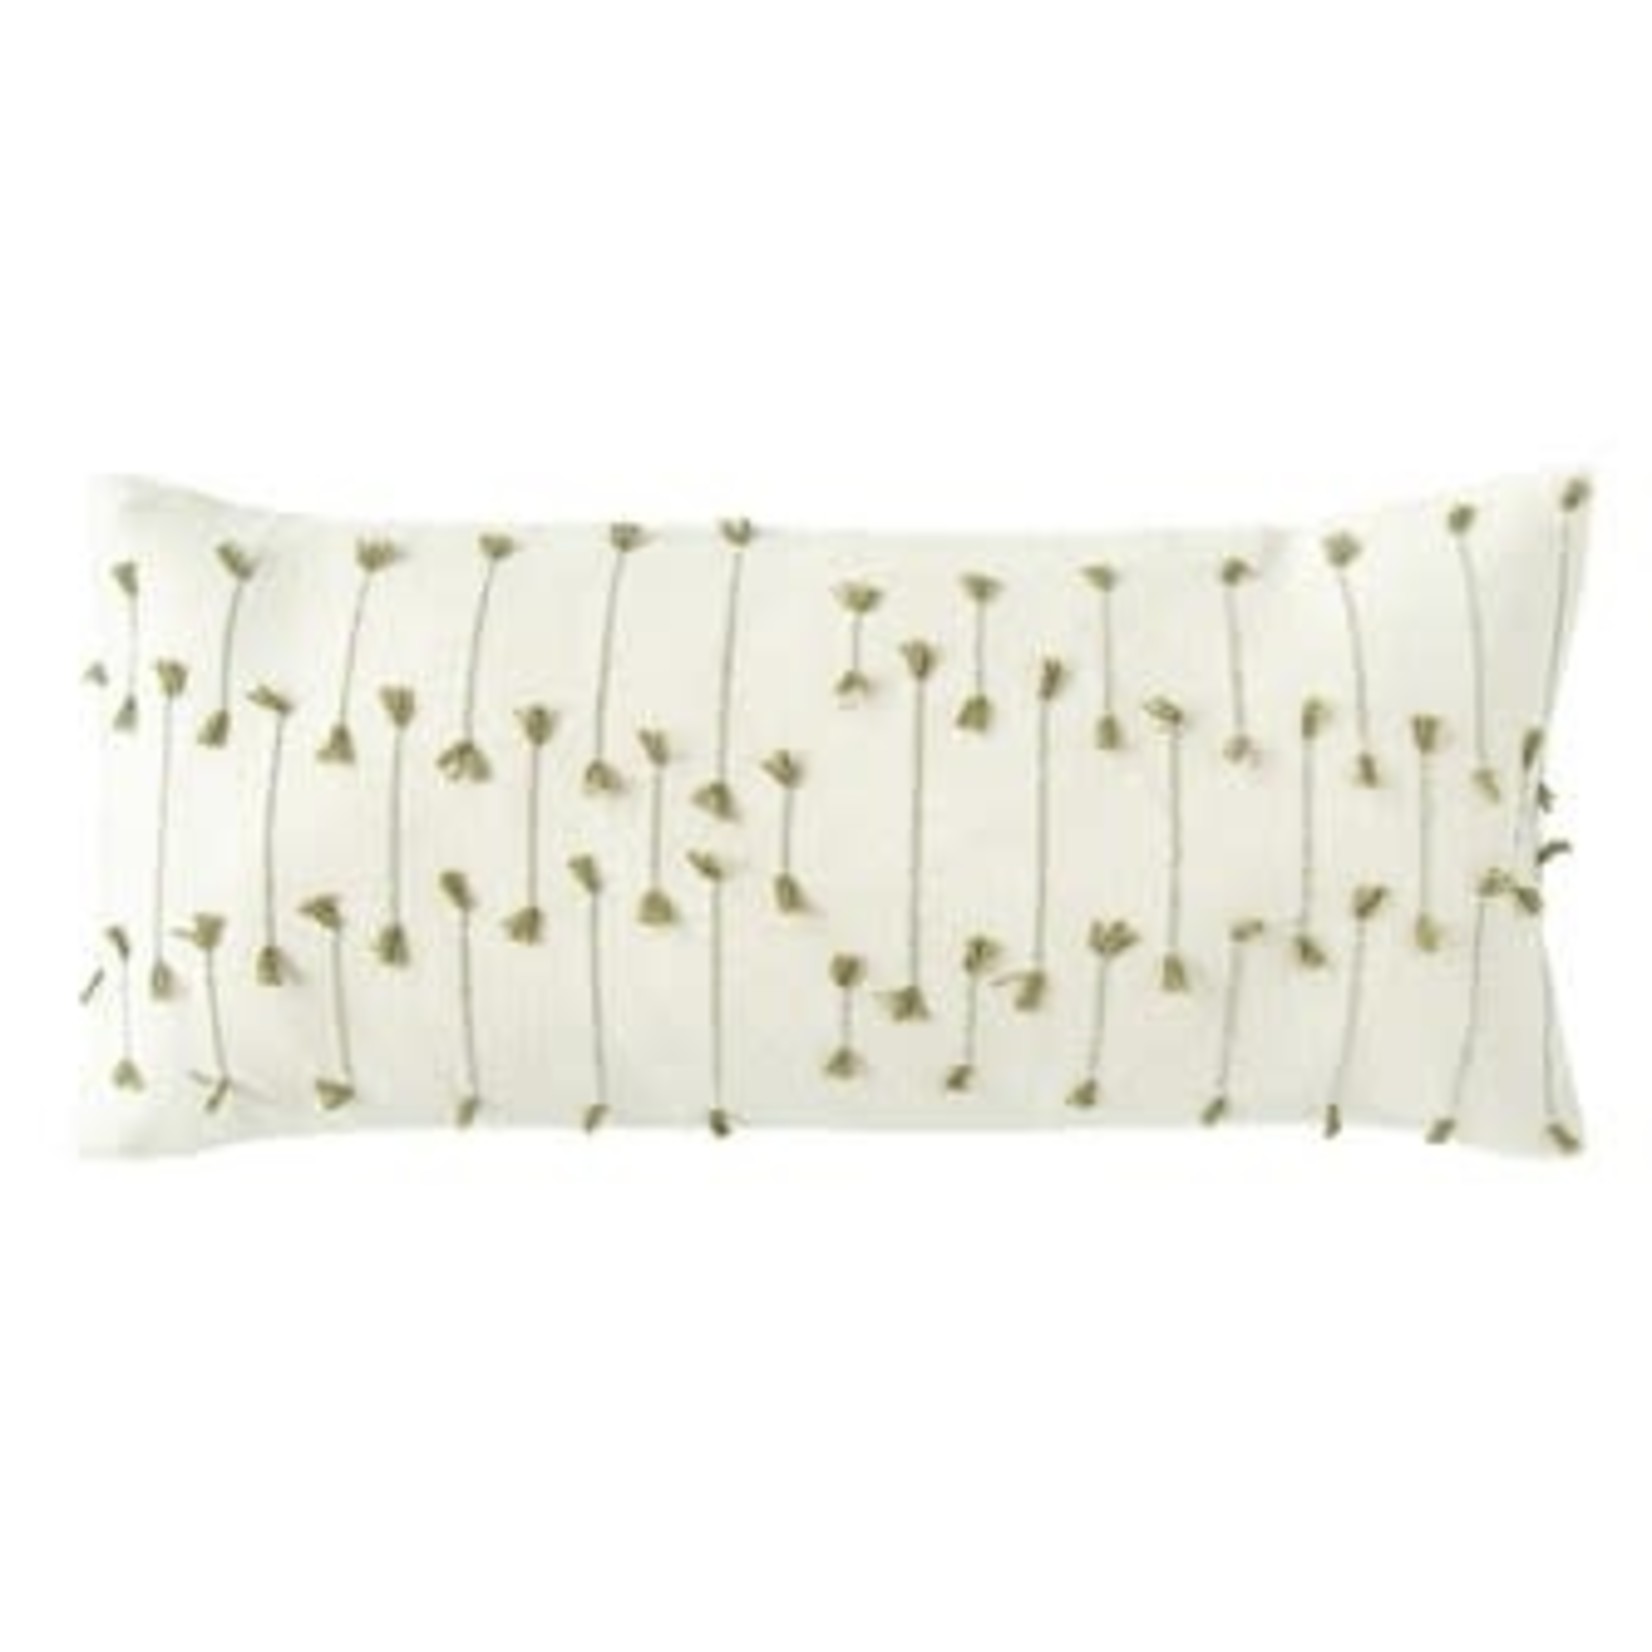 Hand-Woven Cotton Blend Lumbar Pillow w/ Woven Tassels, Natural & Green 36x16